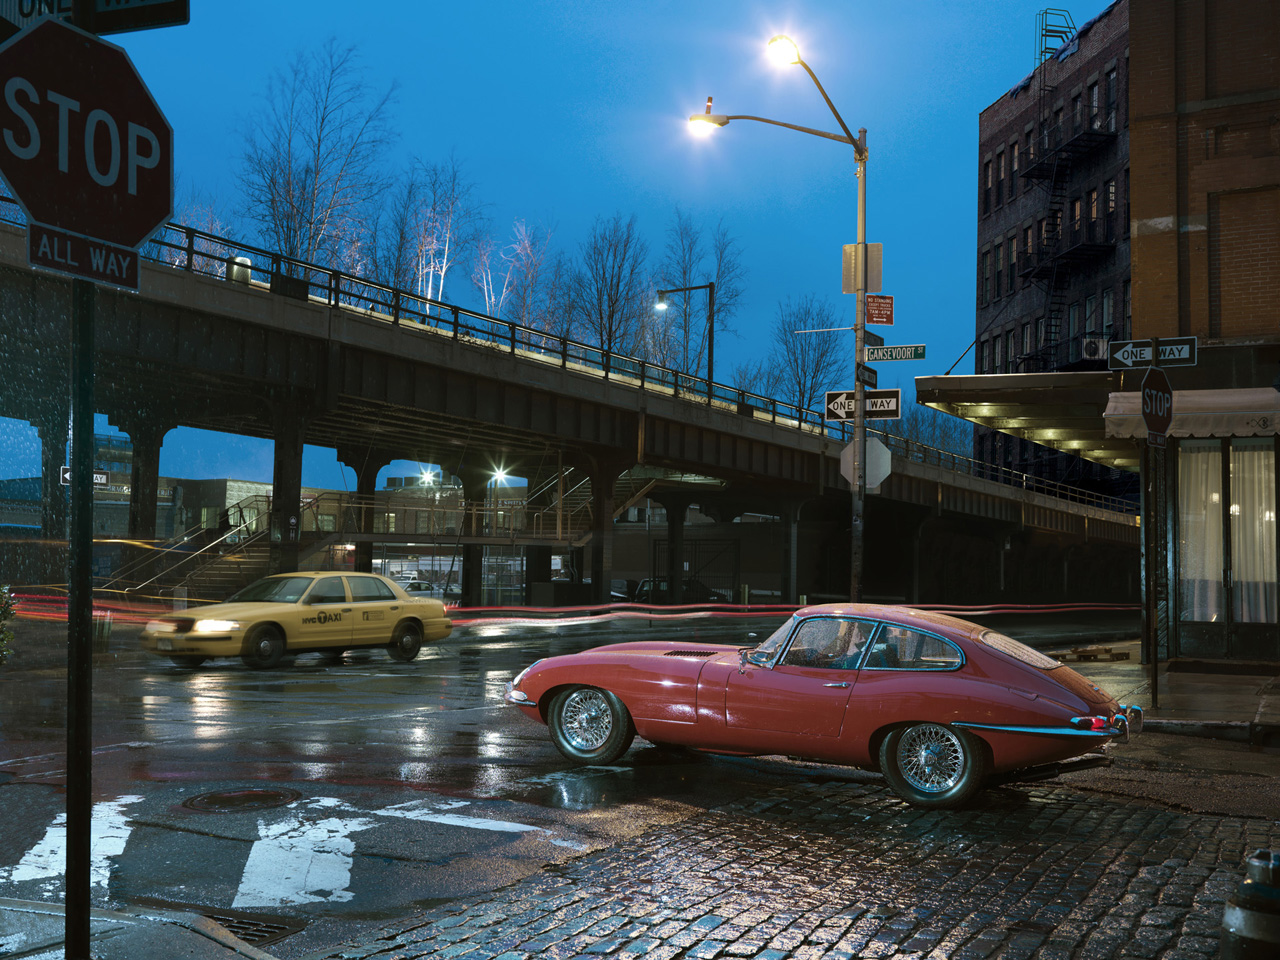 1966 Jaguar E-Type Series 1 in New York City